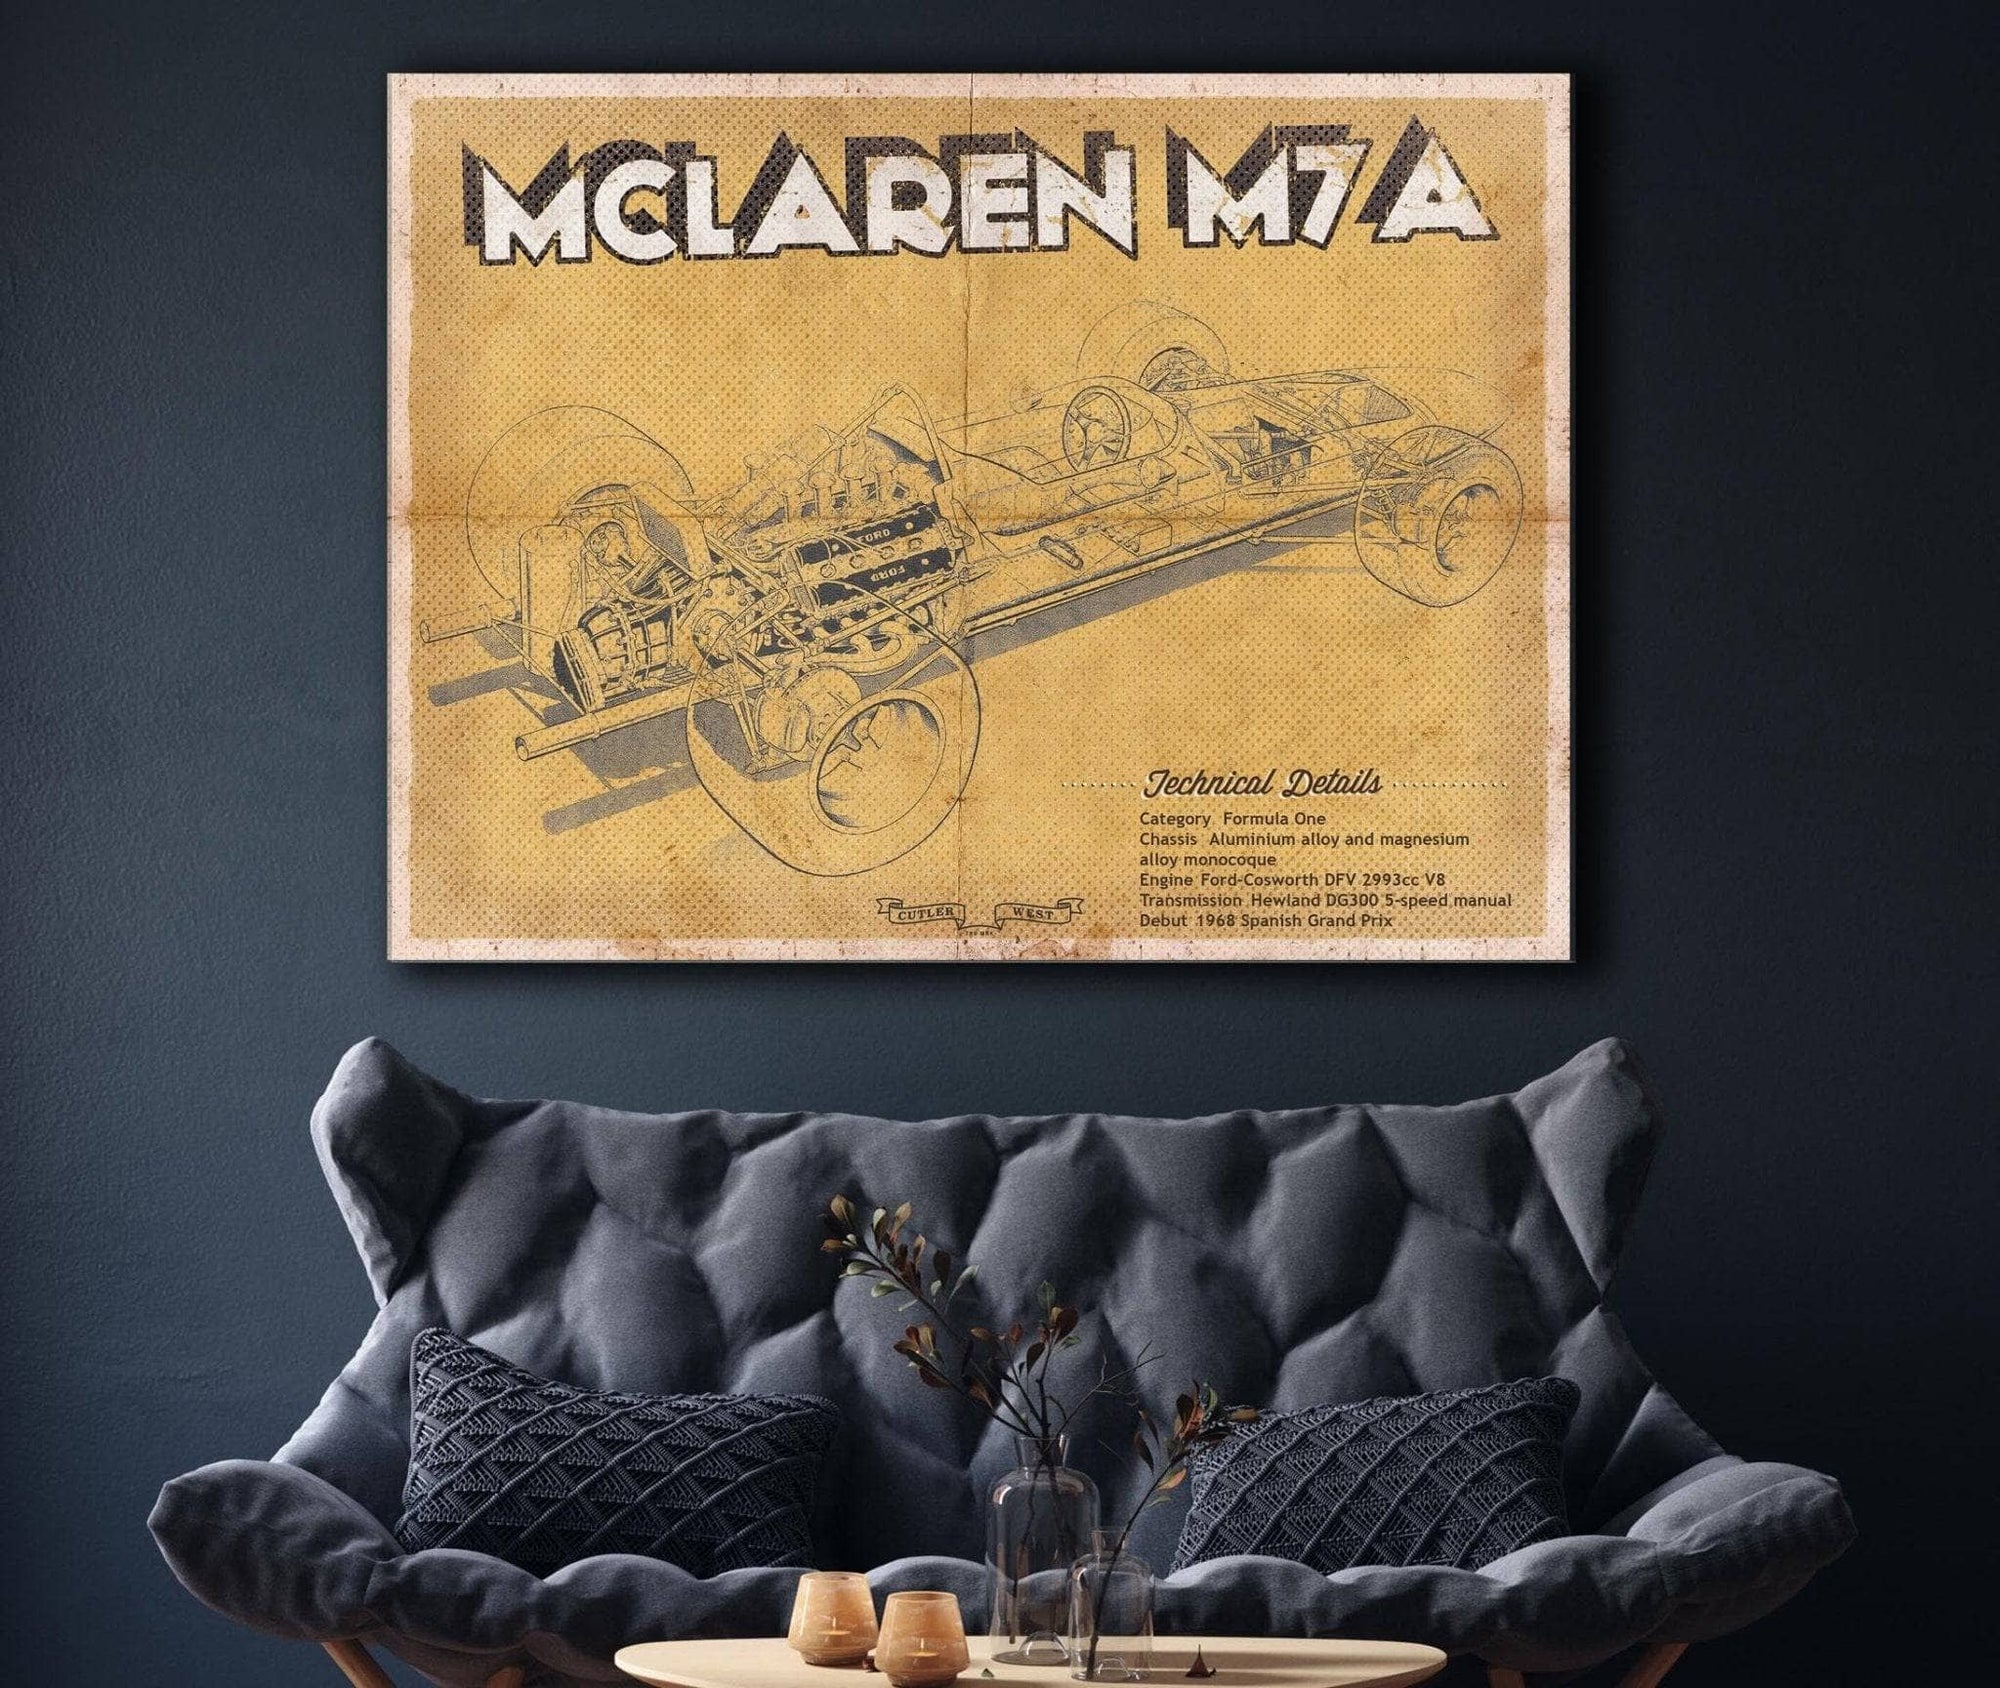 Cutler West Vehicle Collection Vintage Mclaren M7a Formula One Race Car Print